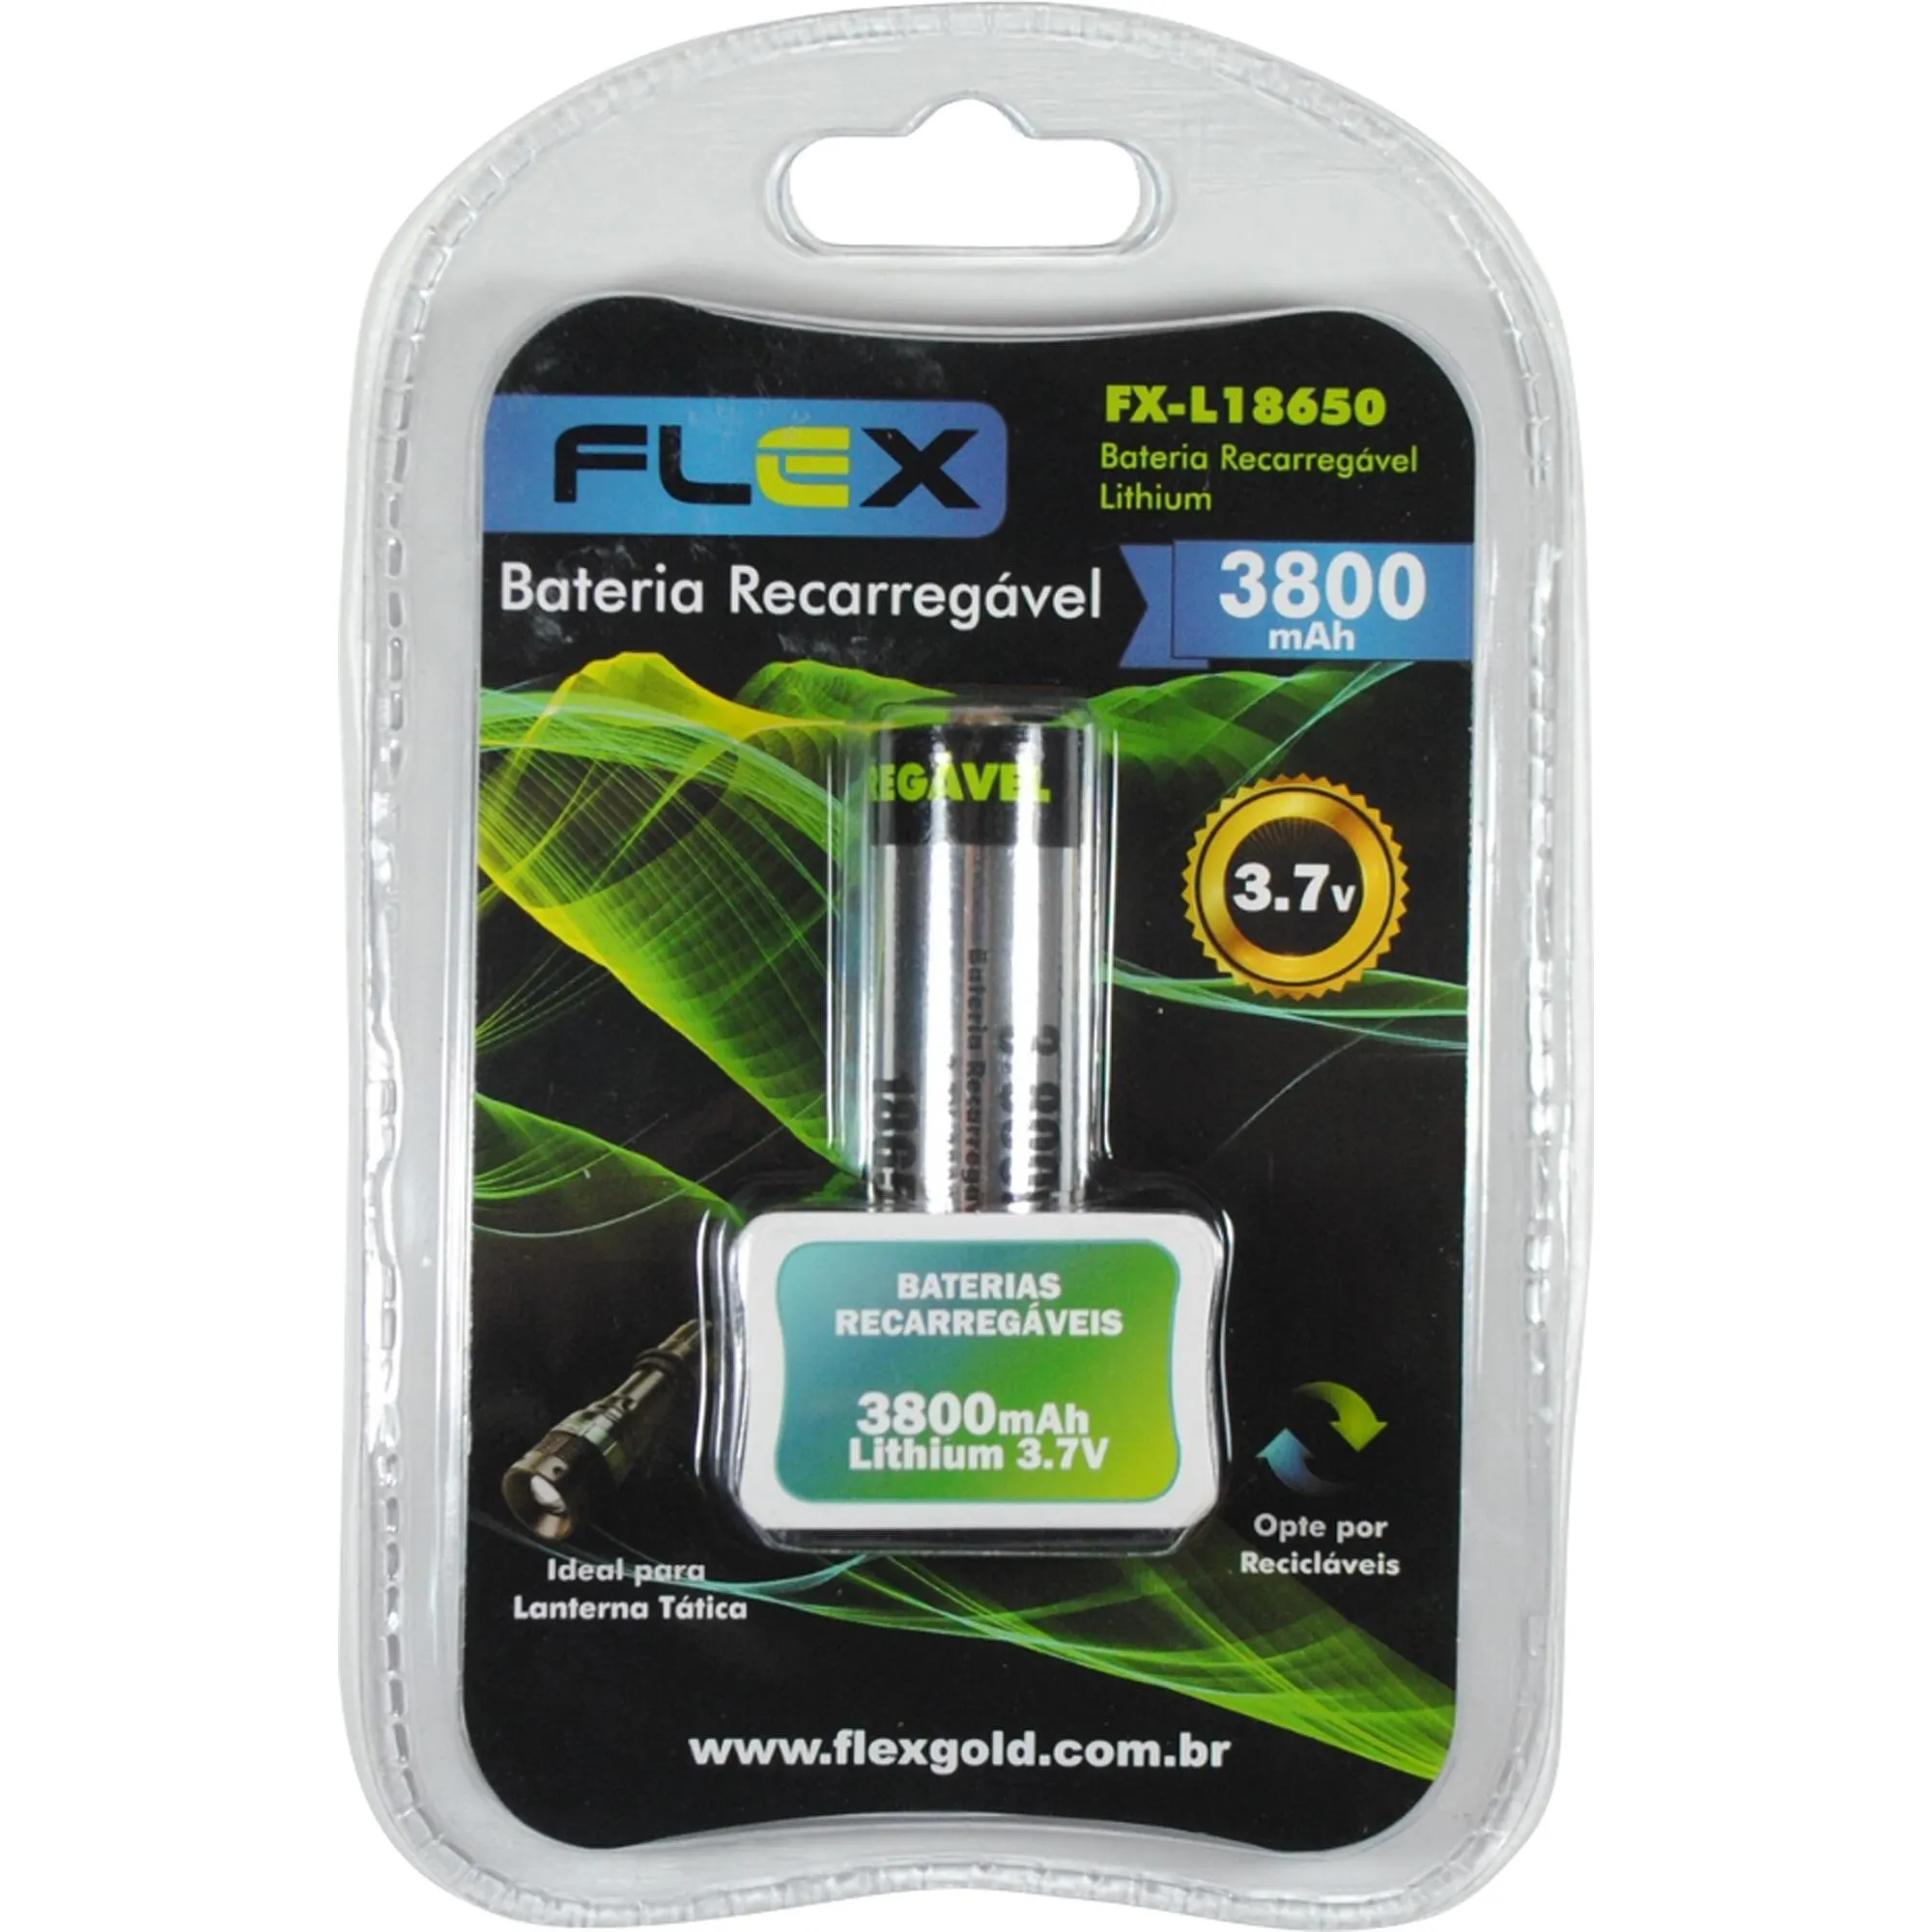 Bateria Recarregável Lithium 3,7V 3800mAh FX-L18650 Flex por 22,99 à vista no boleto/pix ou parcele em até 1x sem juros. Compre na loja Mundomax!